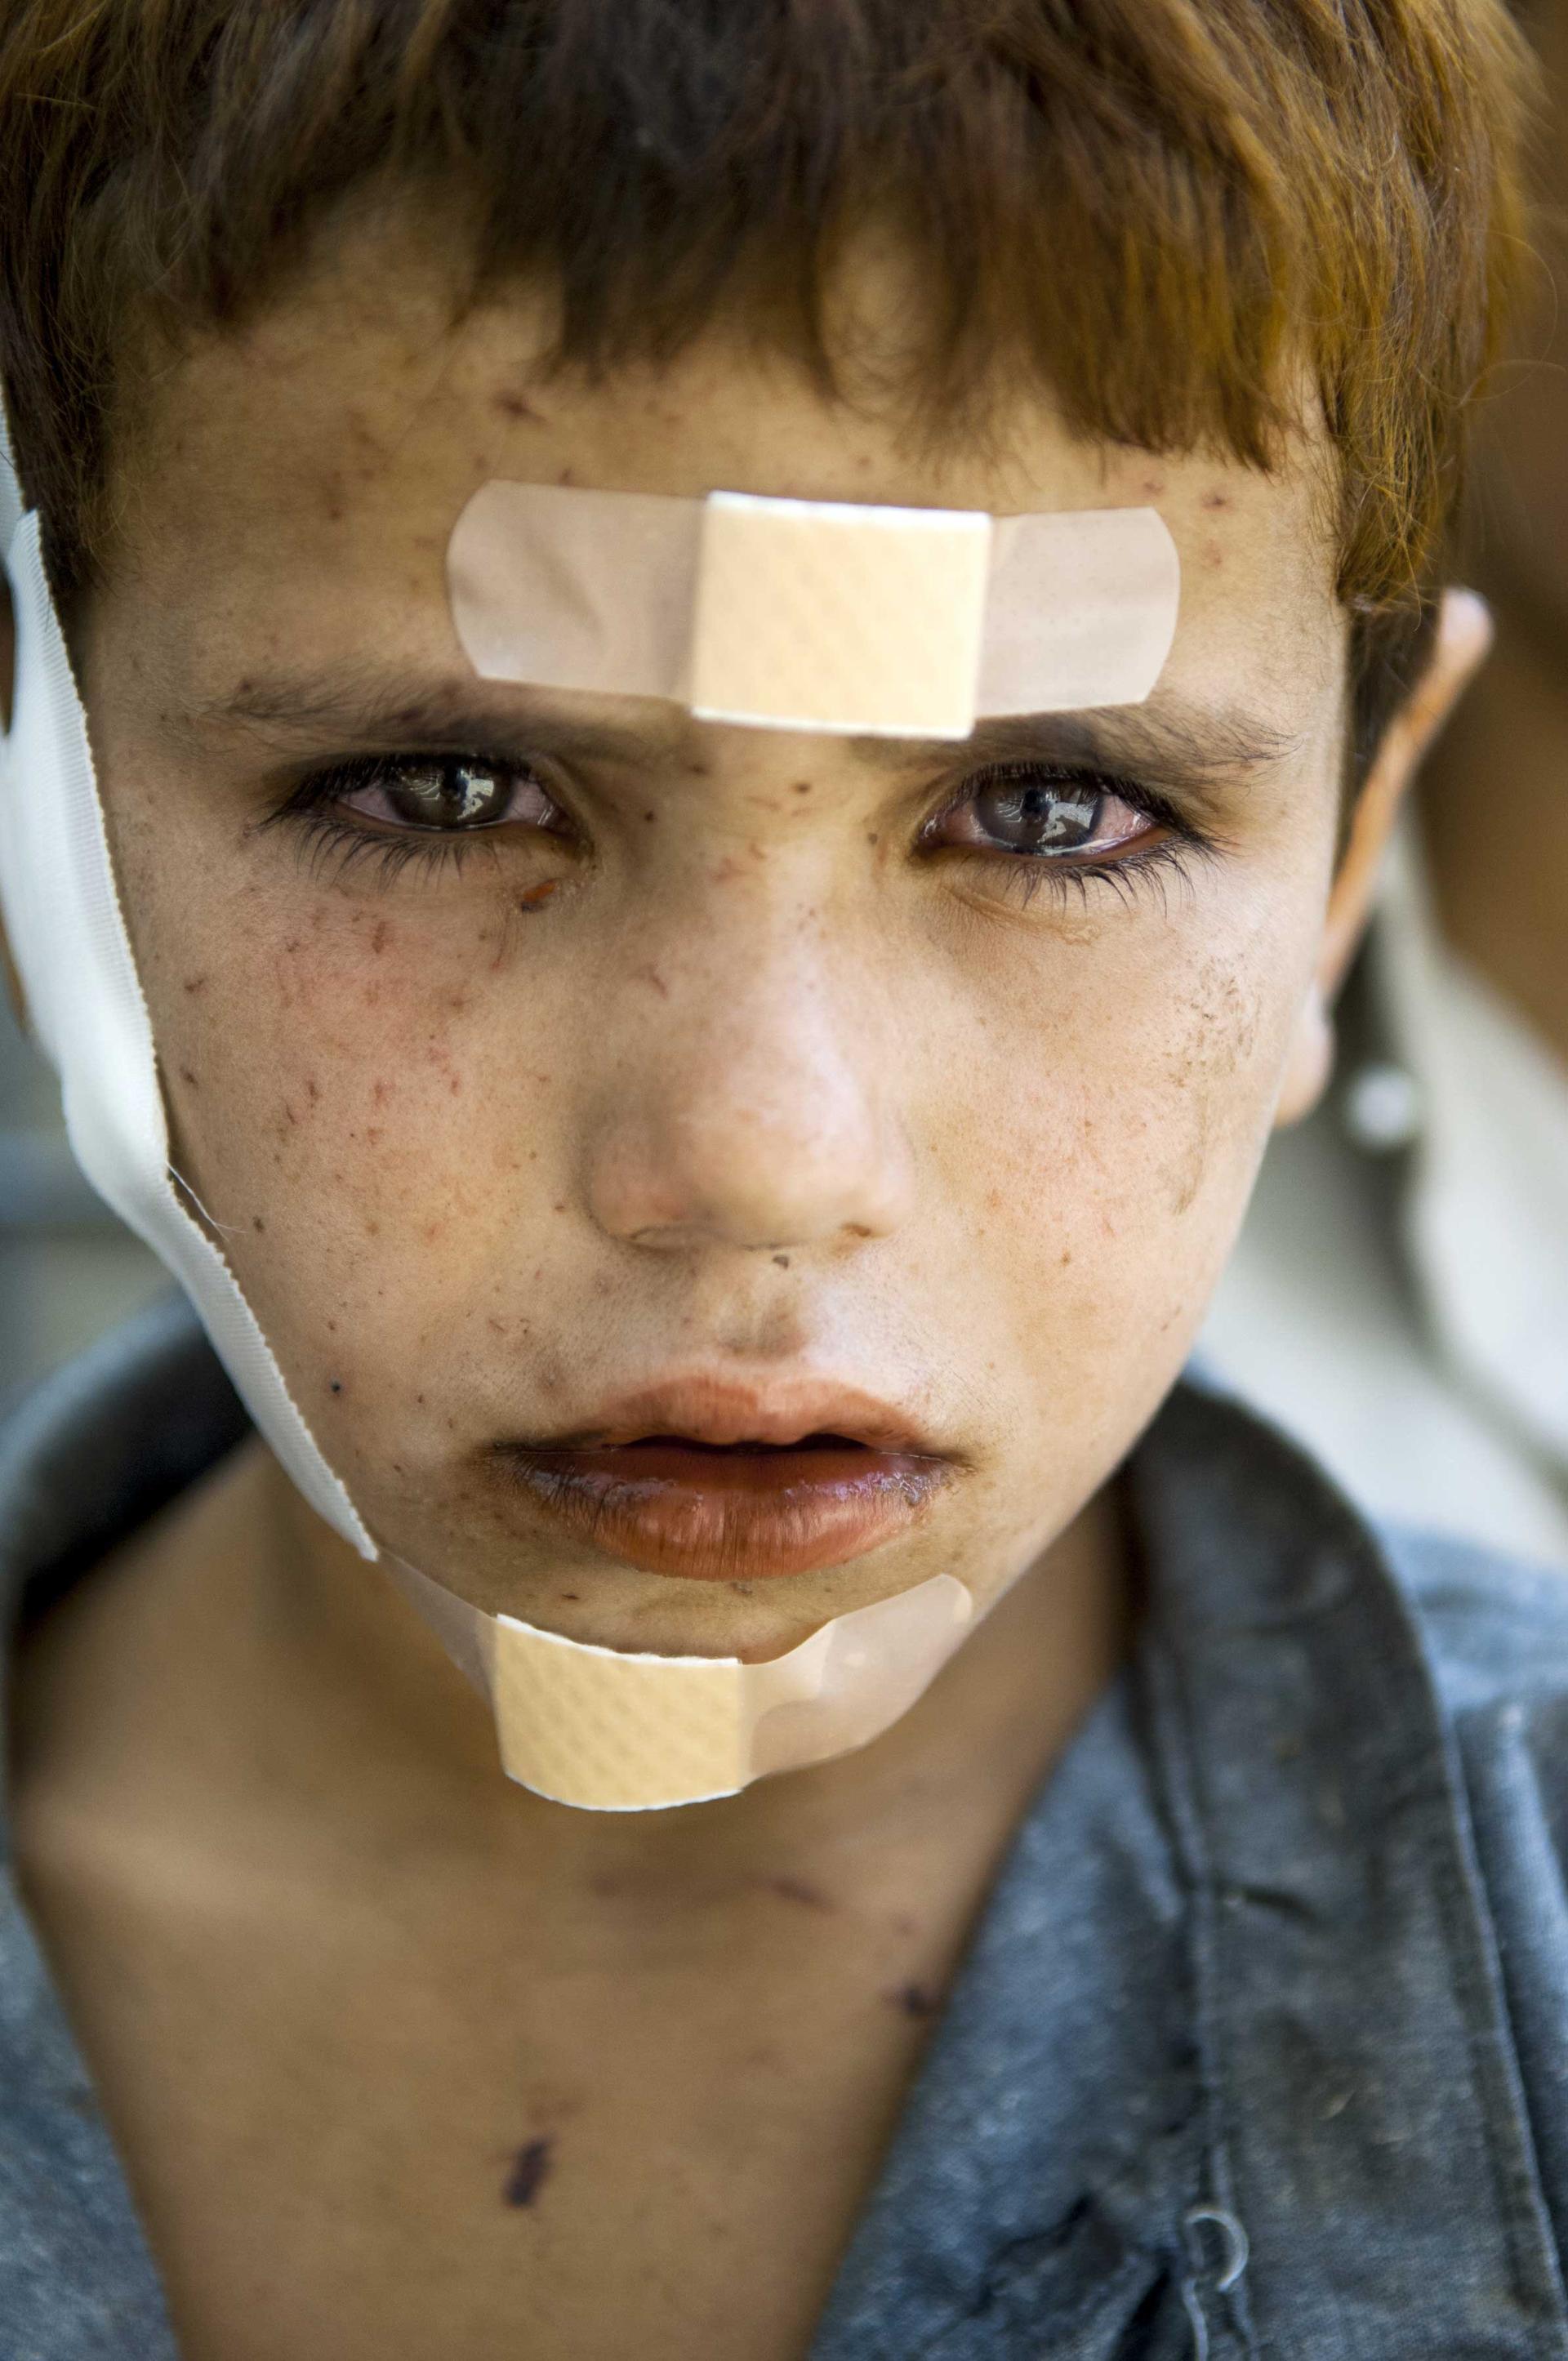 Bandaged boy: September 2007, Afghanistan